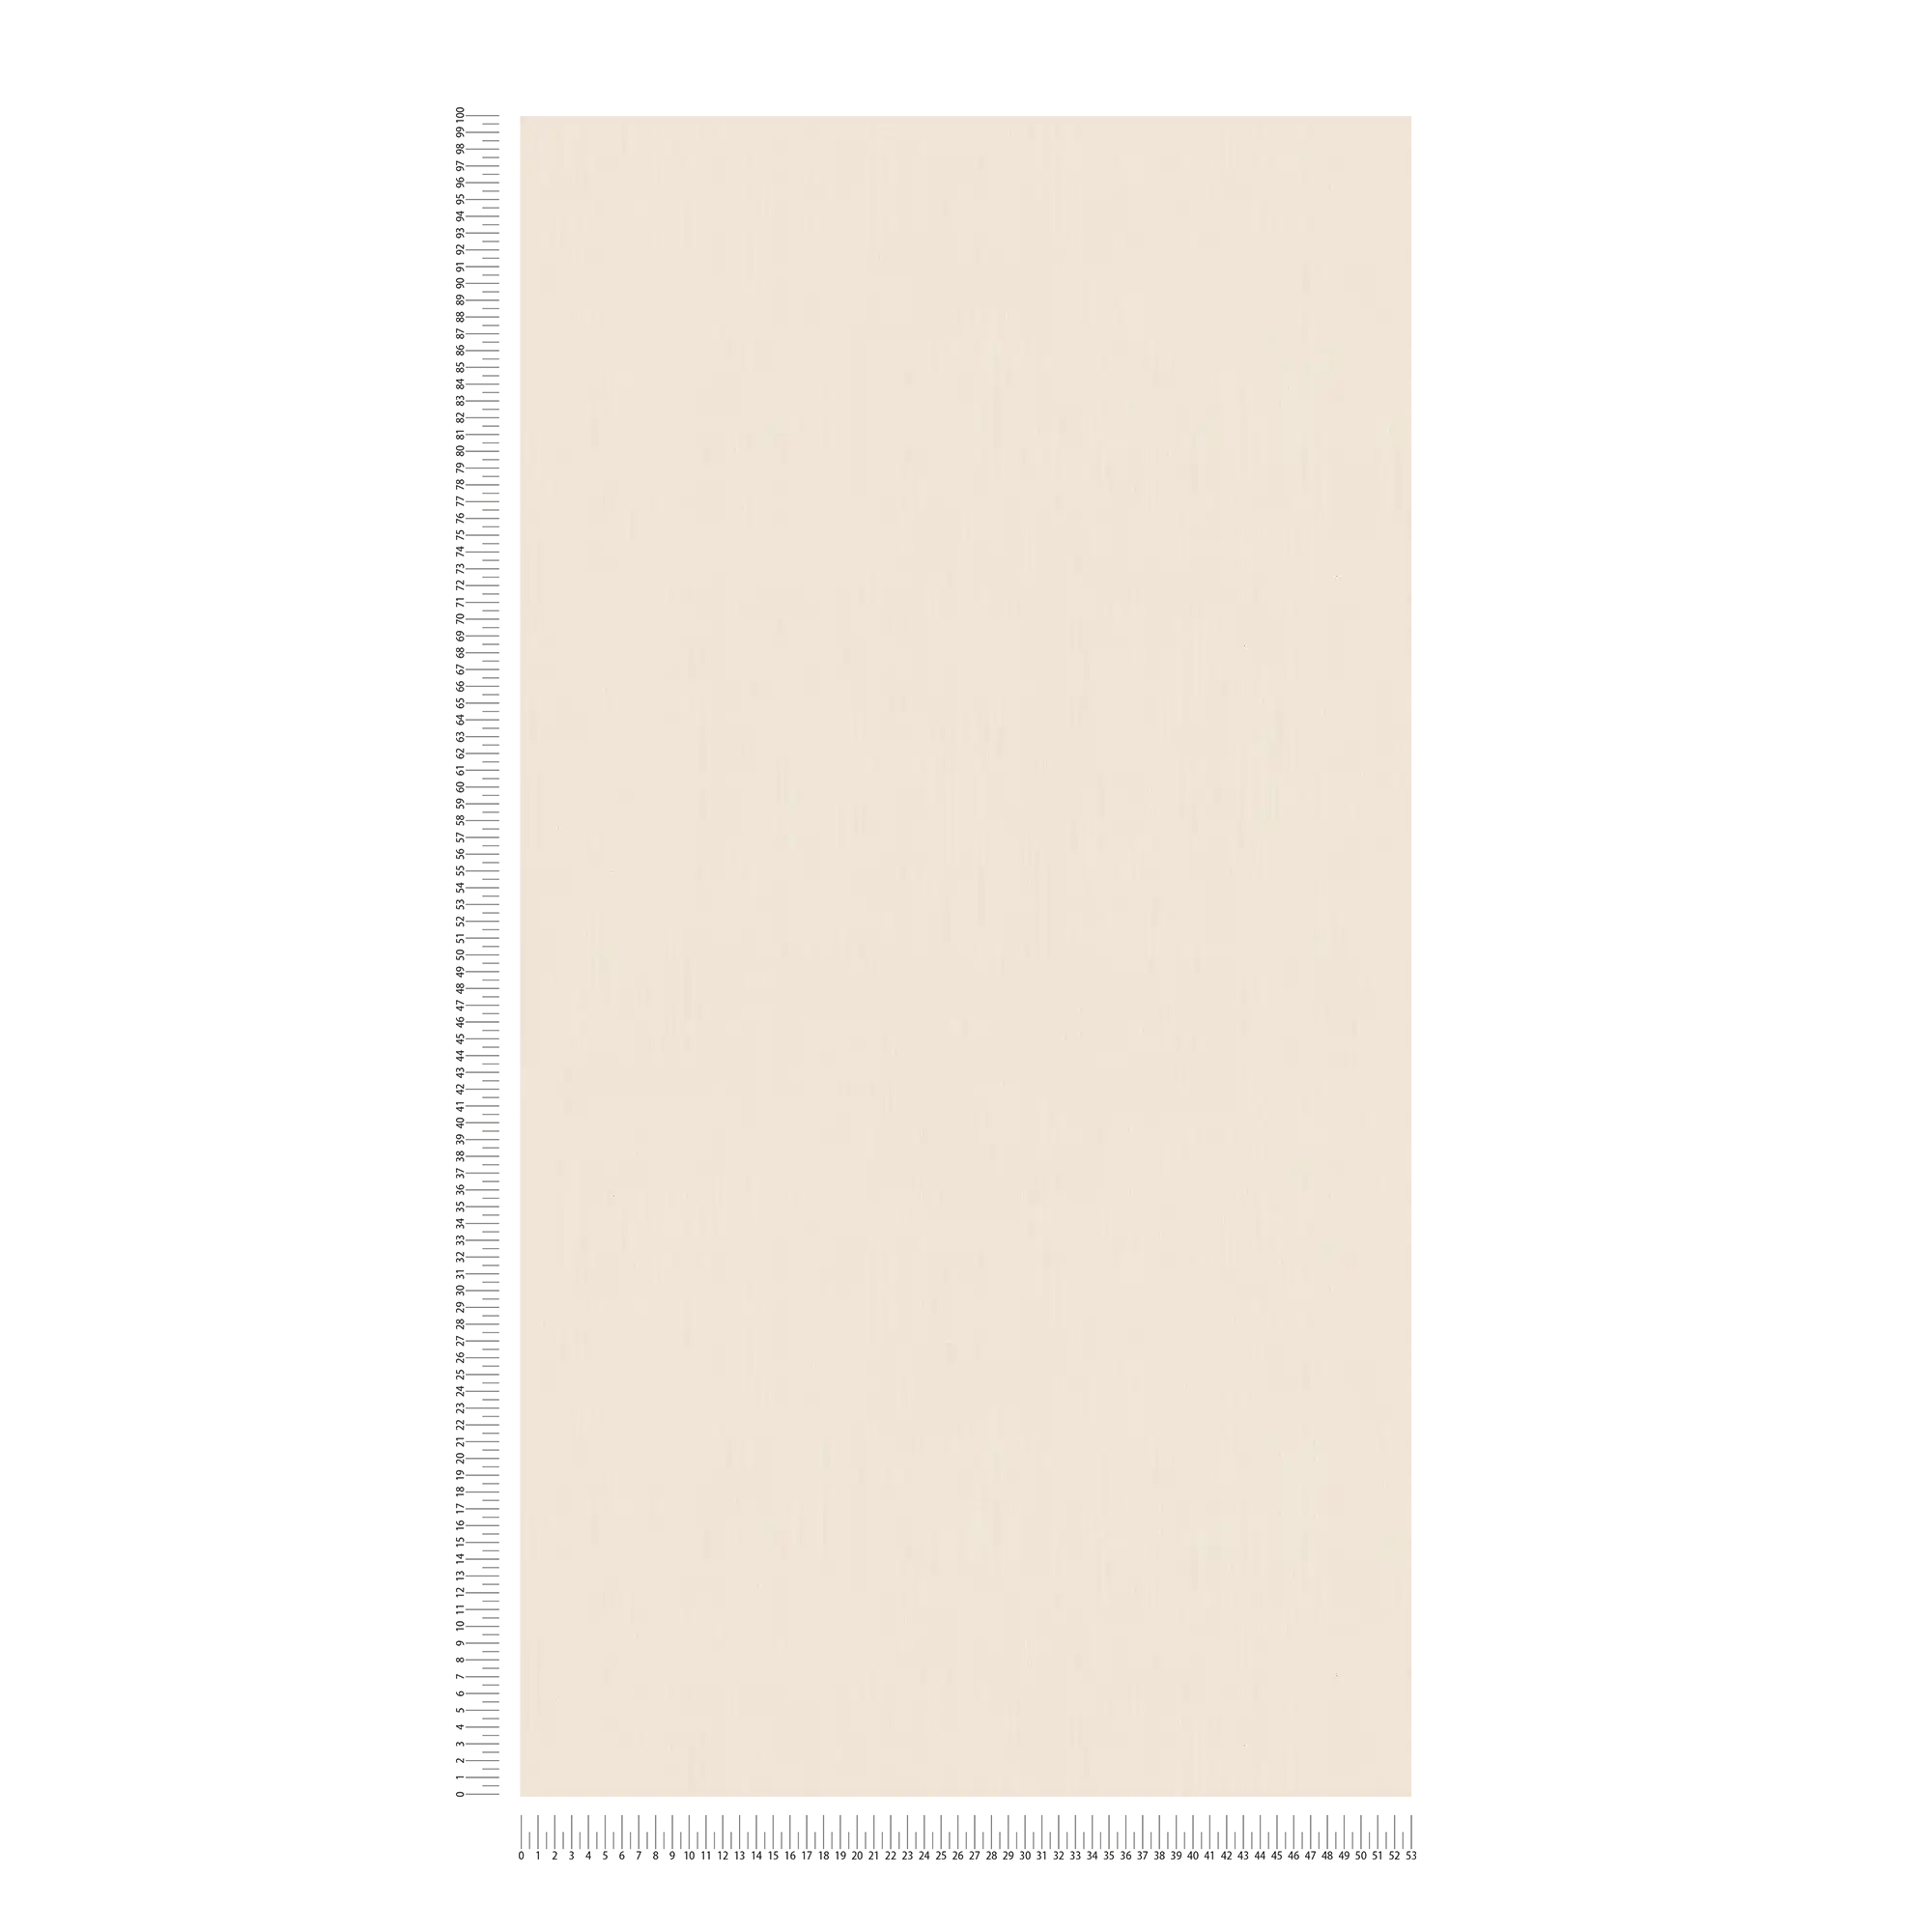             Papier peint crème clair, uni, mat avec effet de couleur chiné
        